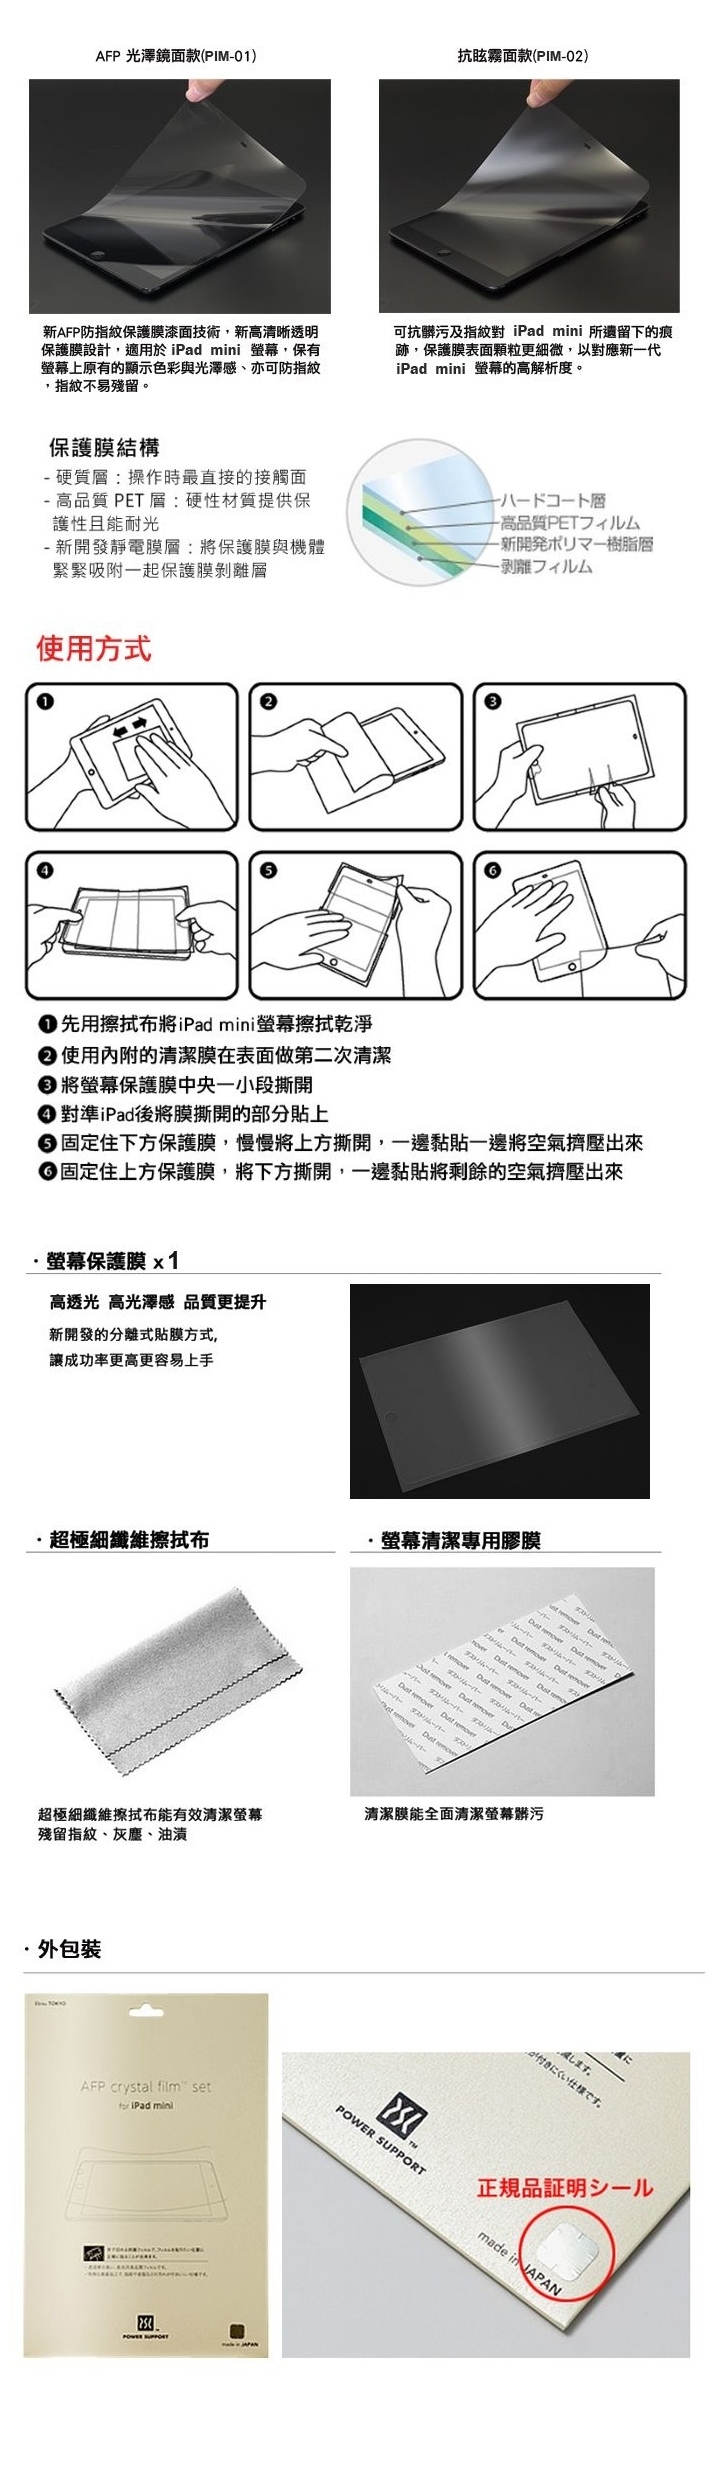 iPad mini 日本製螢幕保護膜 光澤鏡面-4-tile